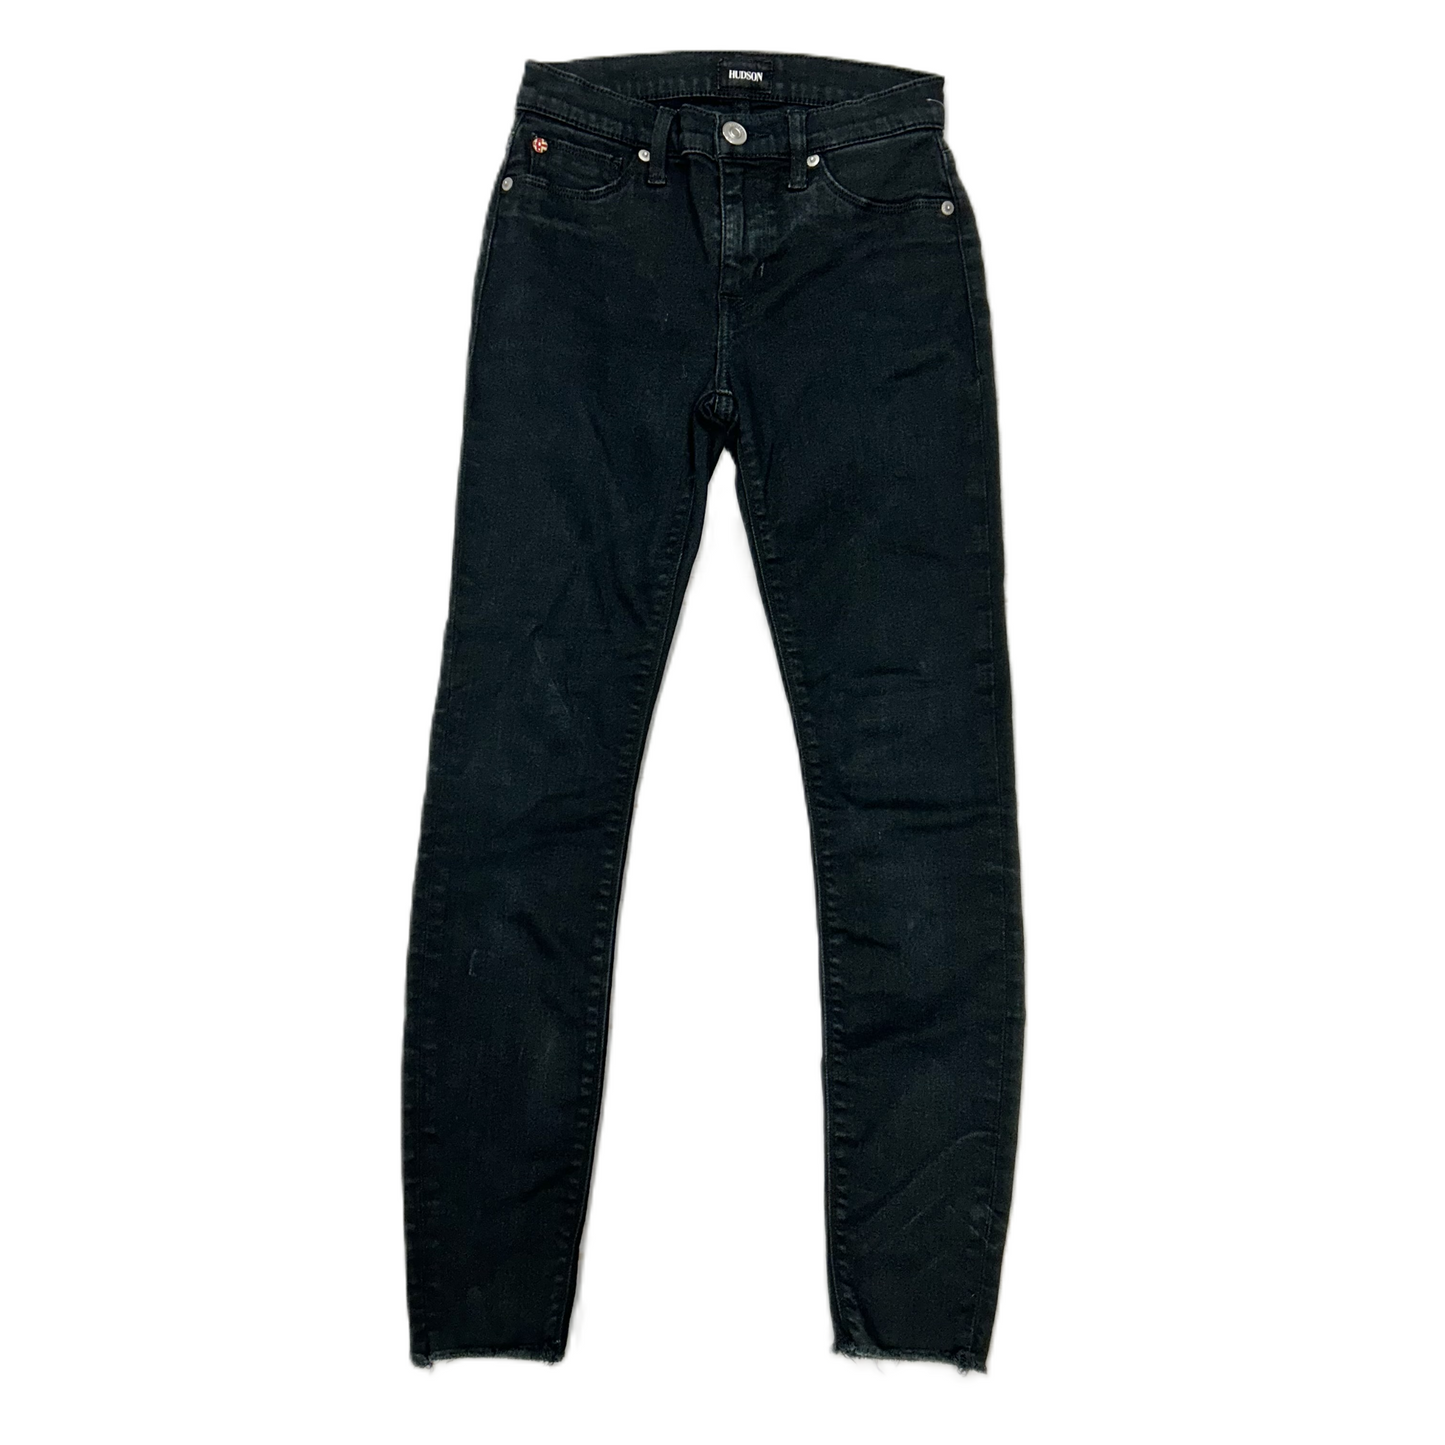 Black Denim Jeans Designer By Hudson, Size: 0